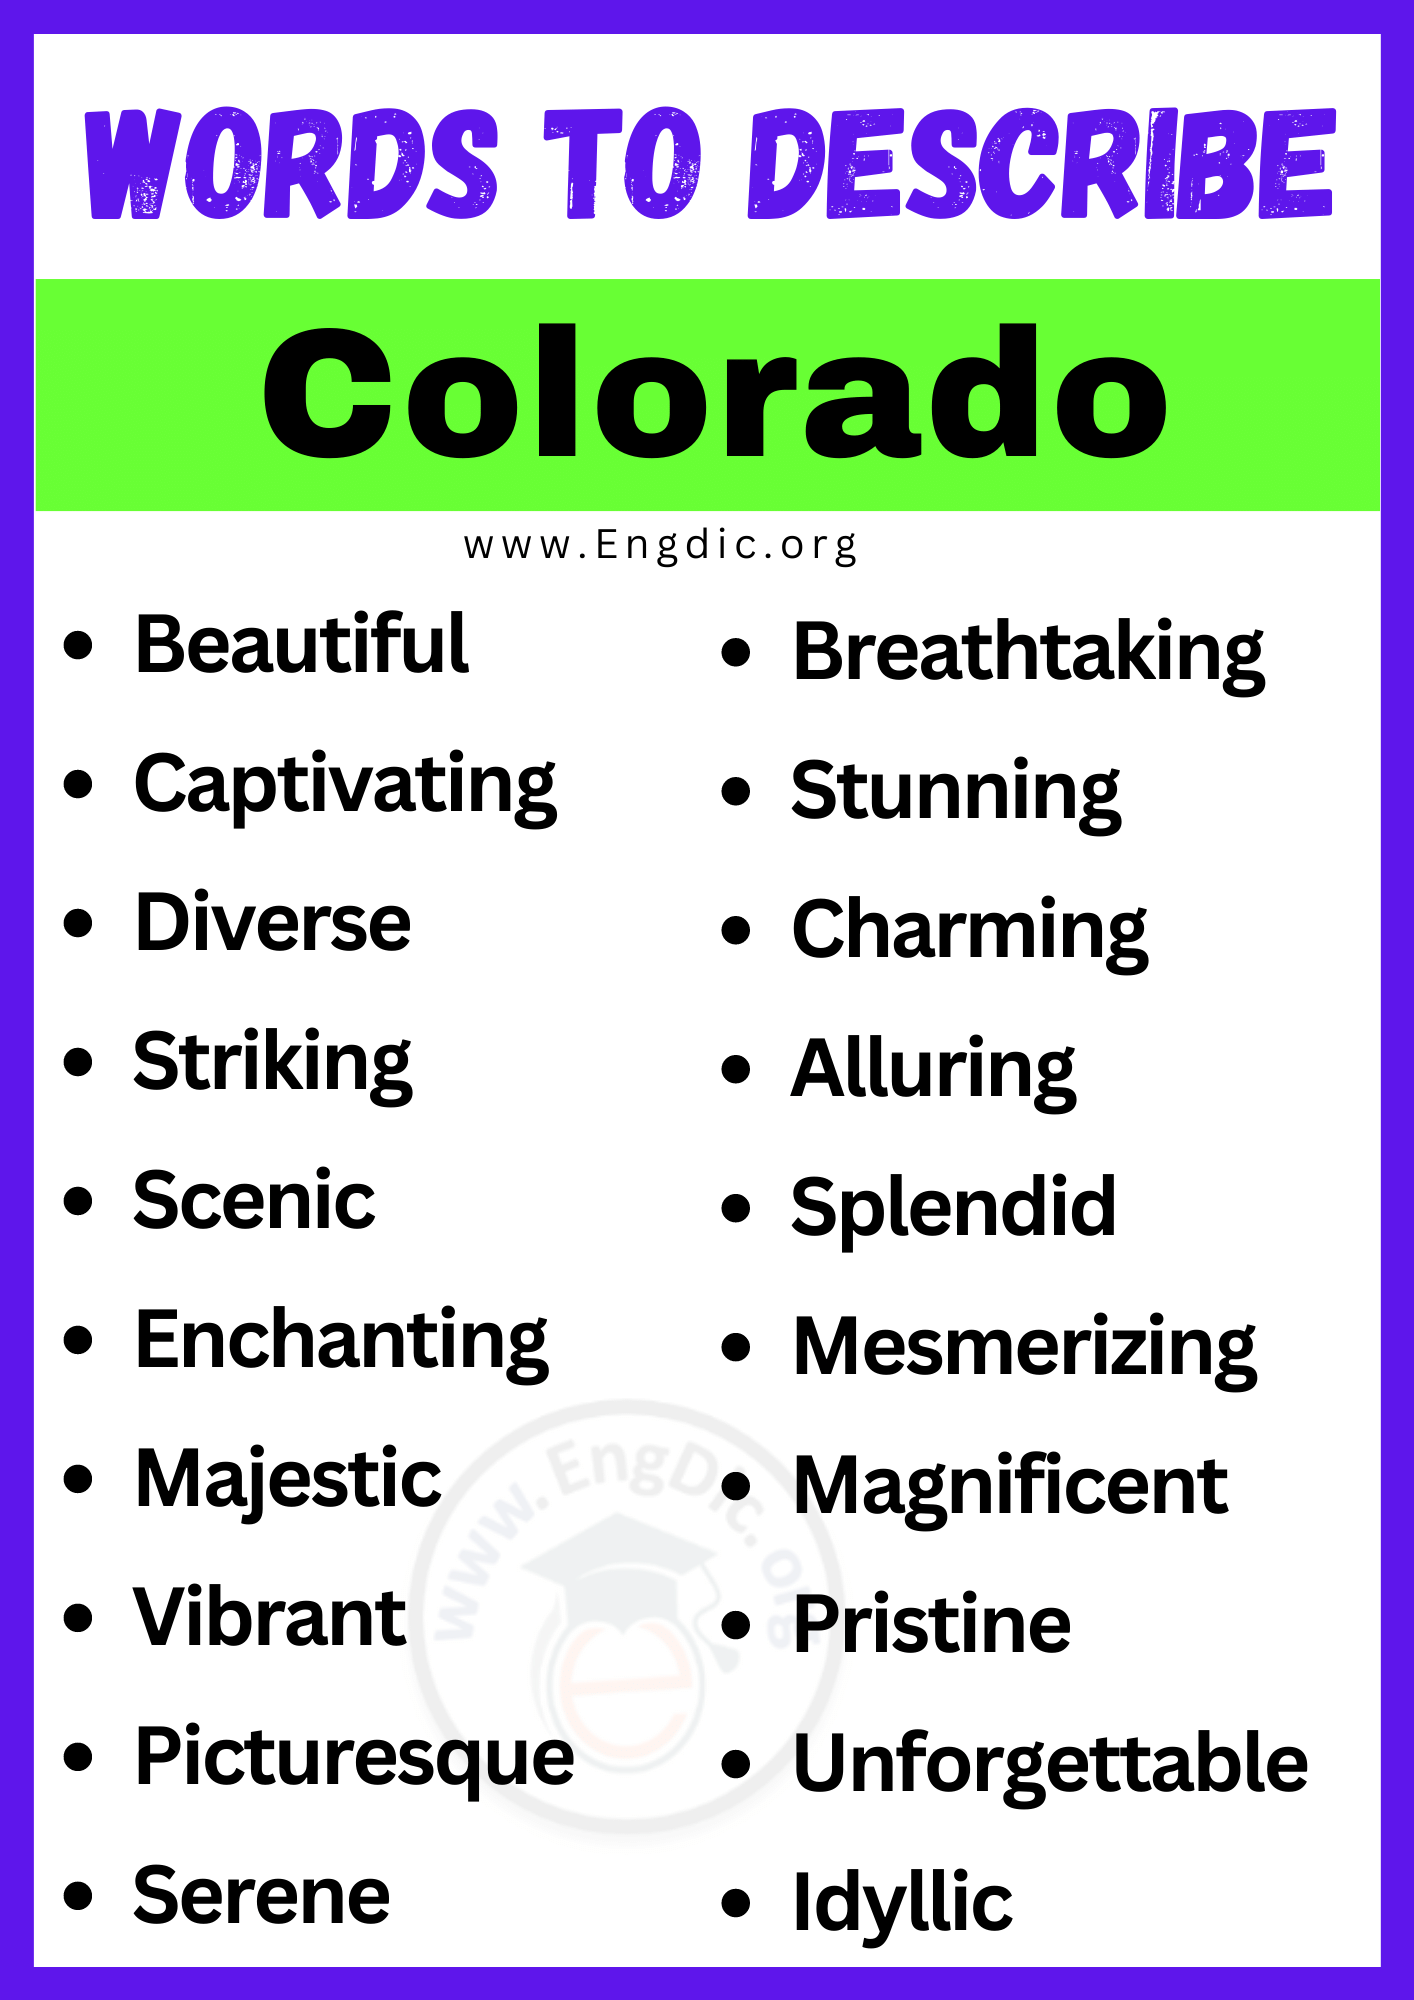 Words to Describe Colorado